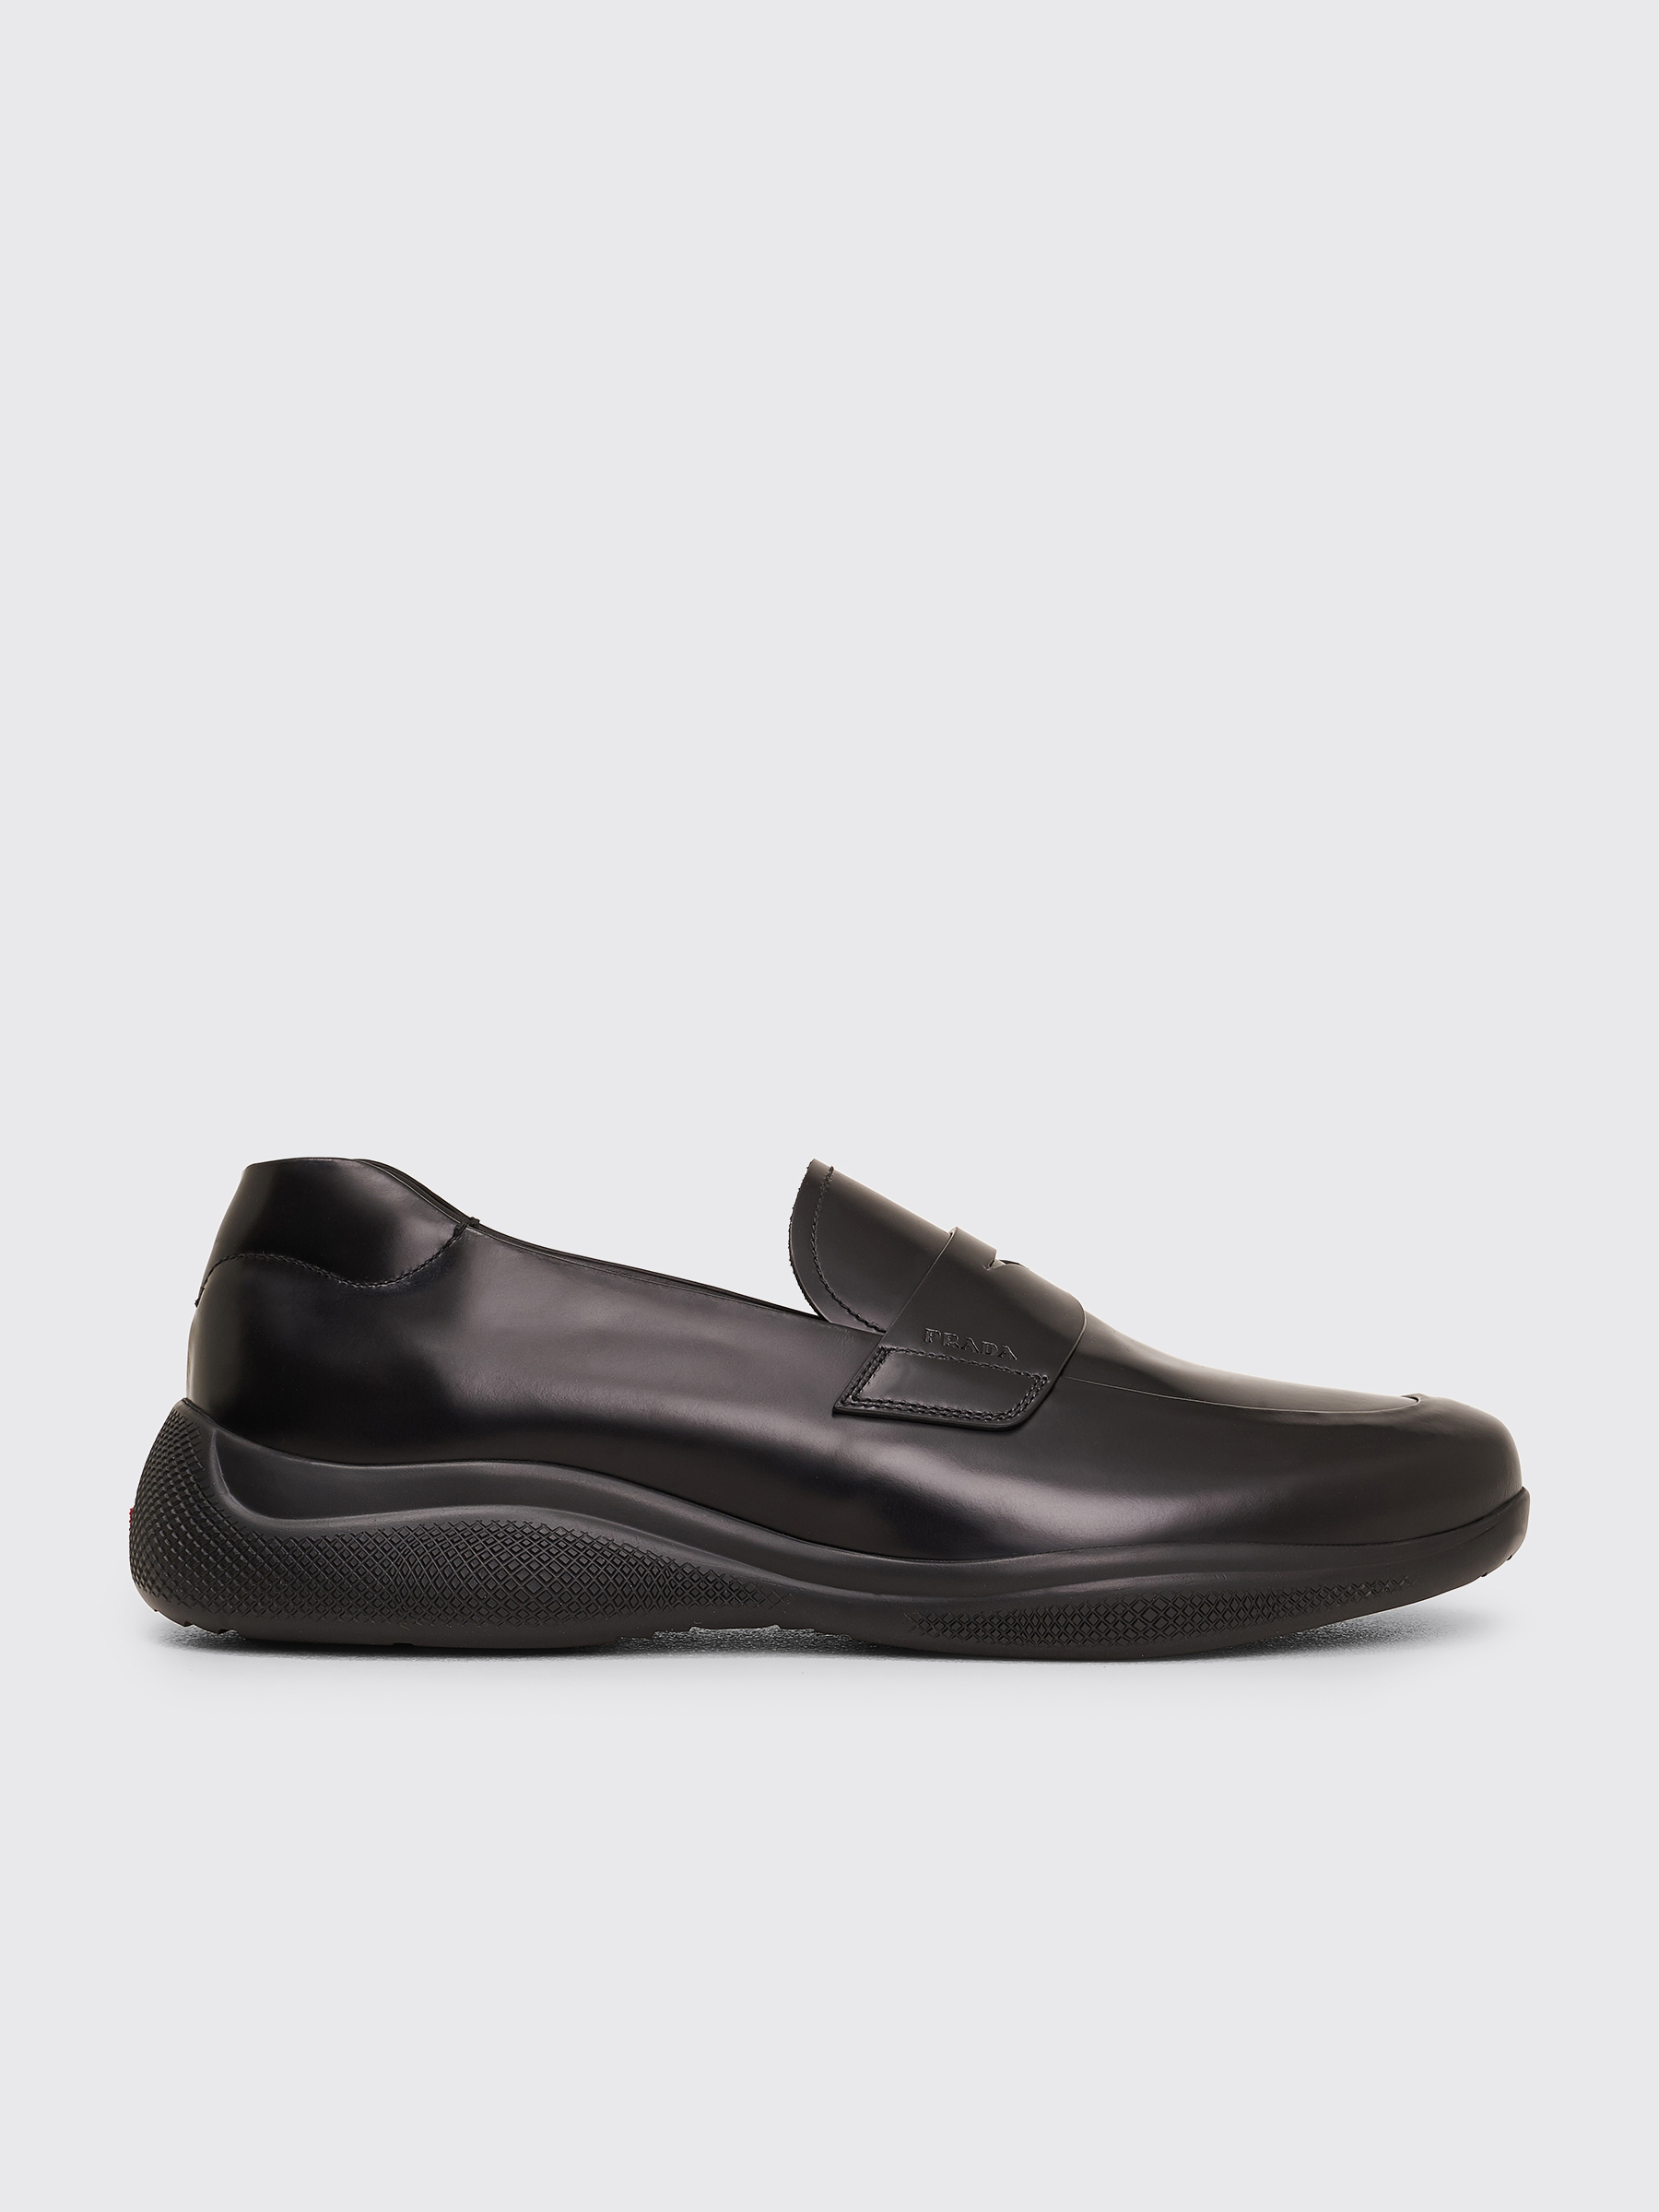 Très Bien - Prada Brushed Leather Sport Loafers Black